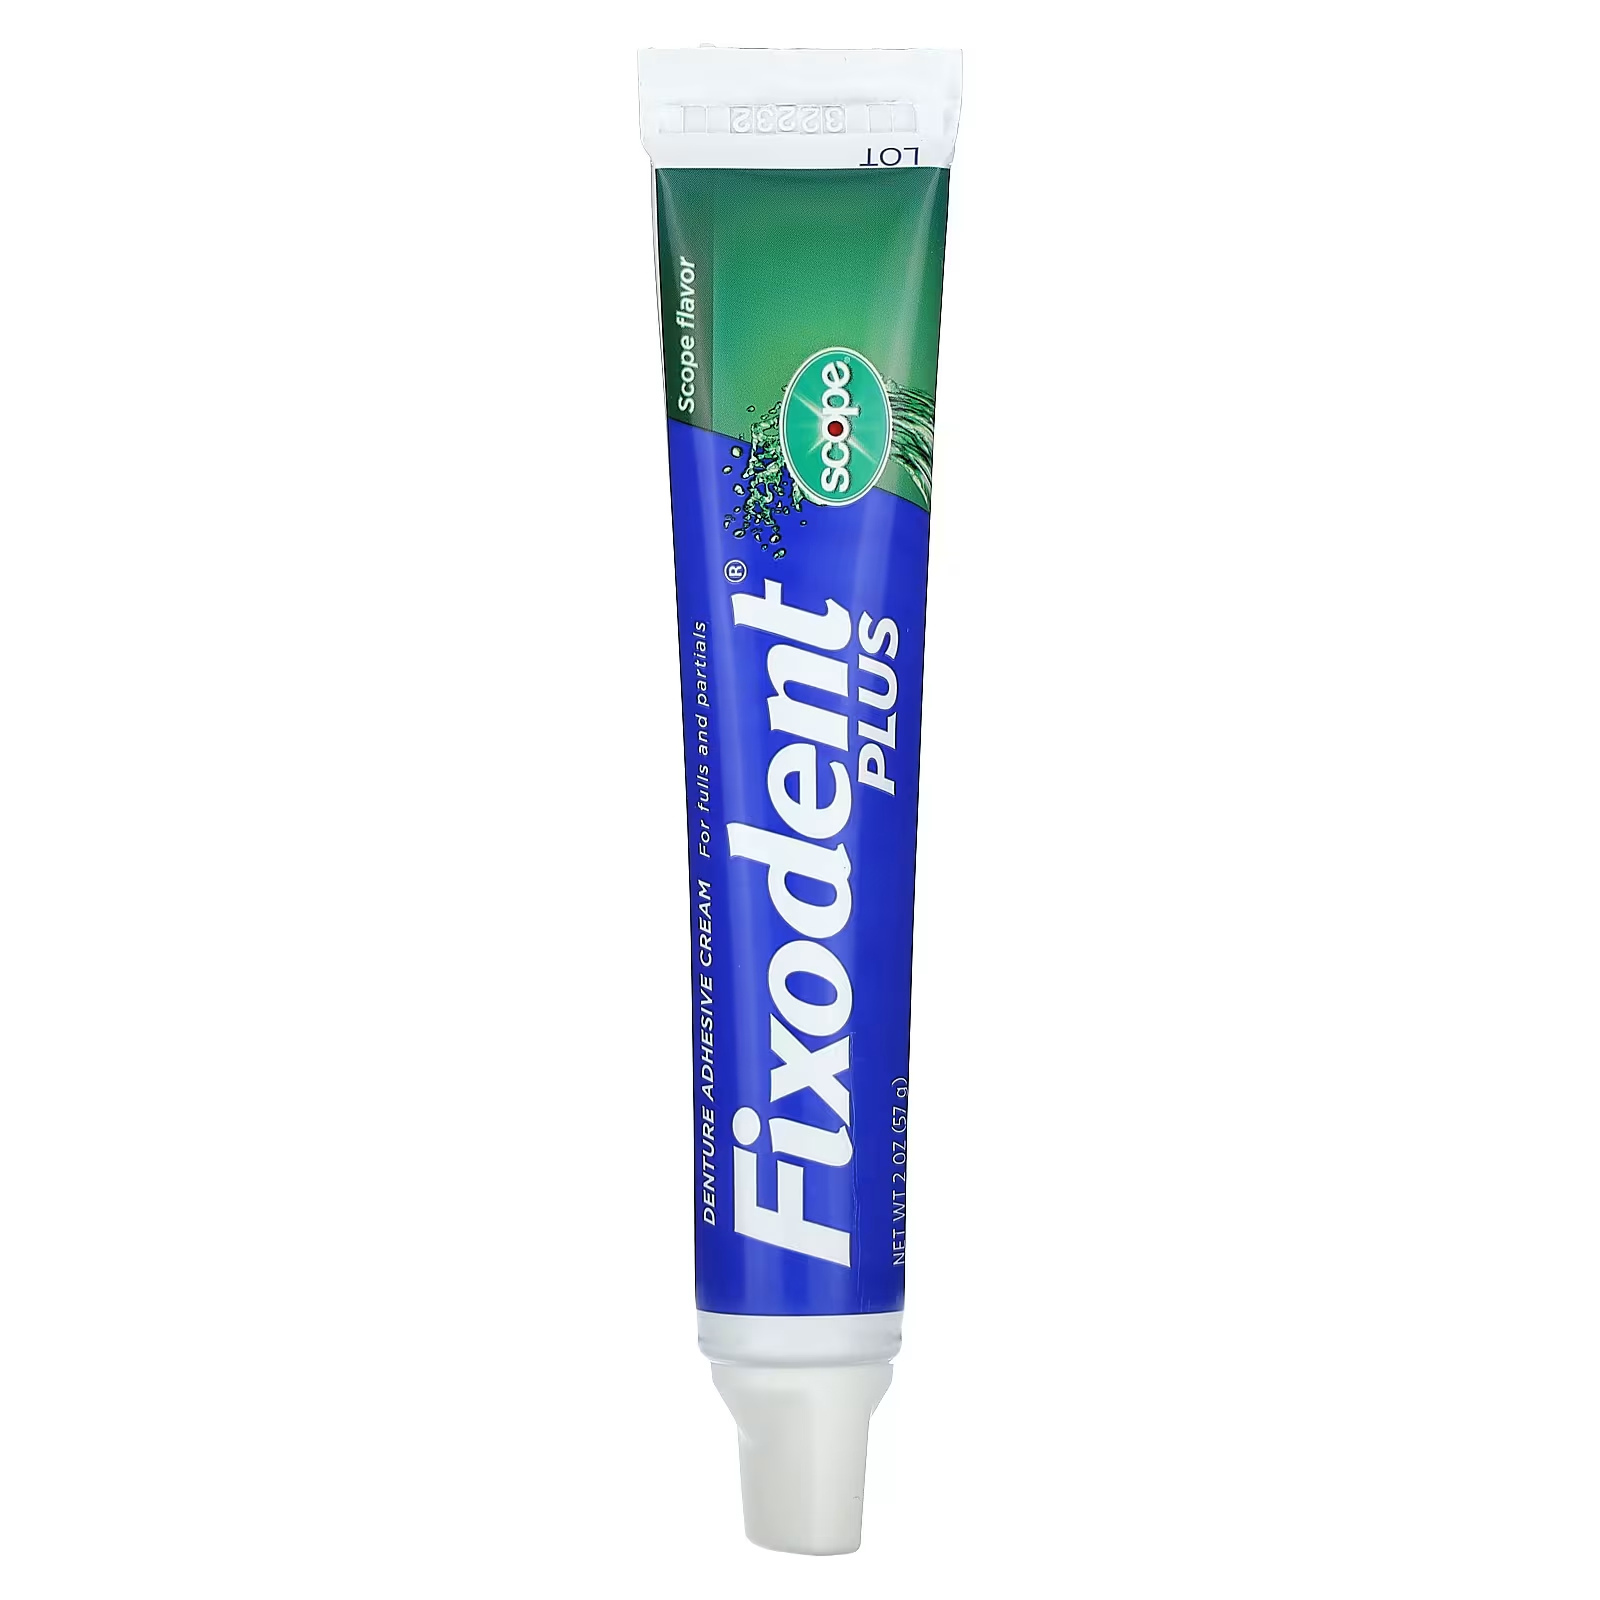 Стоматологический клей-крем Fixodent Plus, 2 унции (57 г) клей для зубных протезов 57 г fixodent other